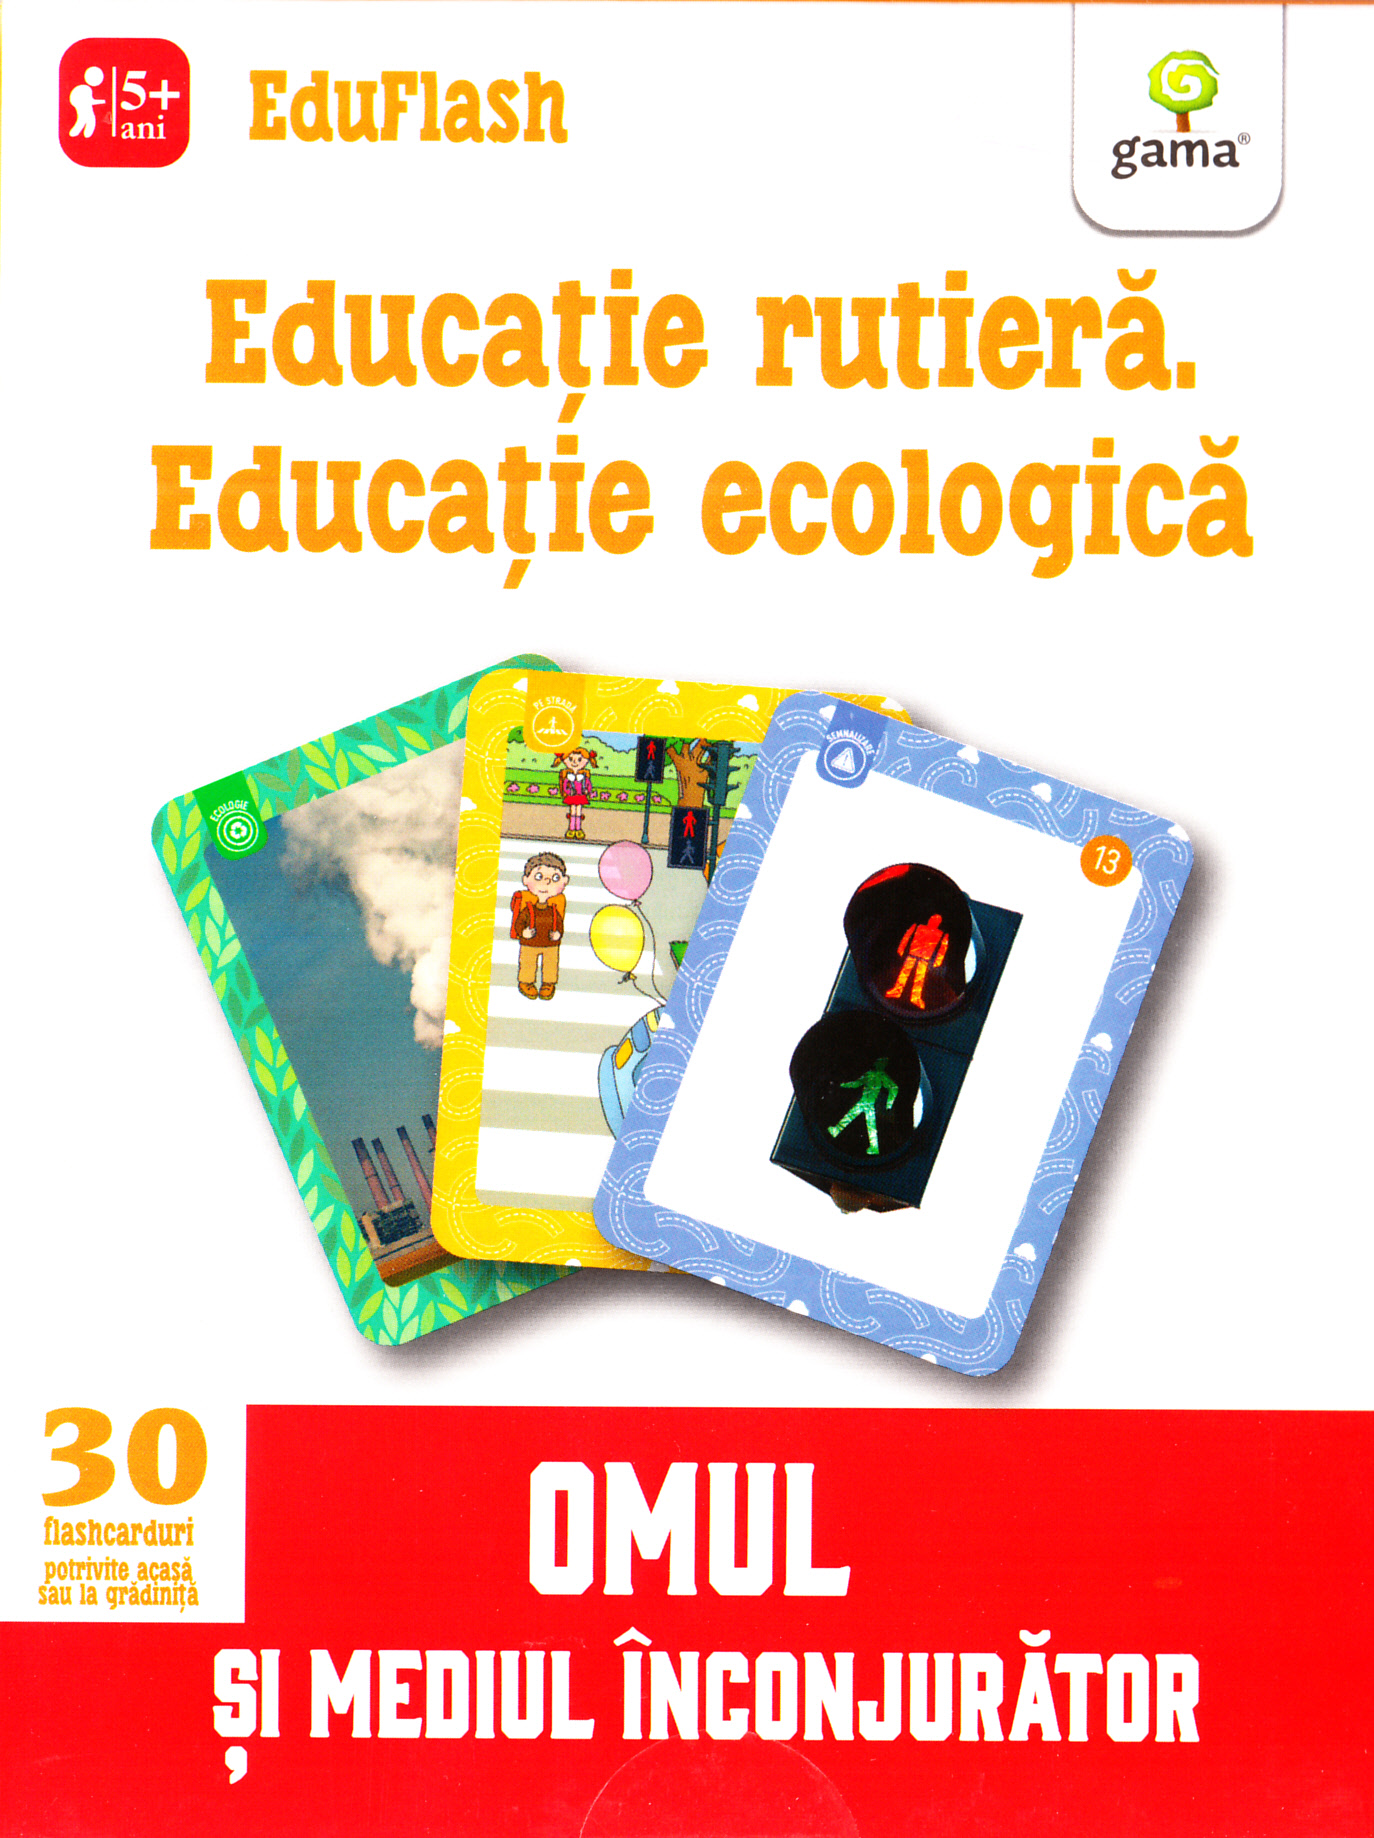 Educatie rutiera. Educatie ecologica 5 ani+ (Eduflash)